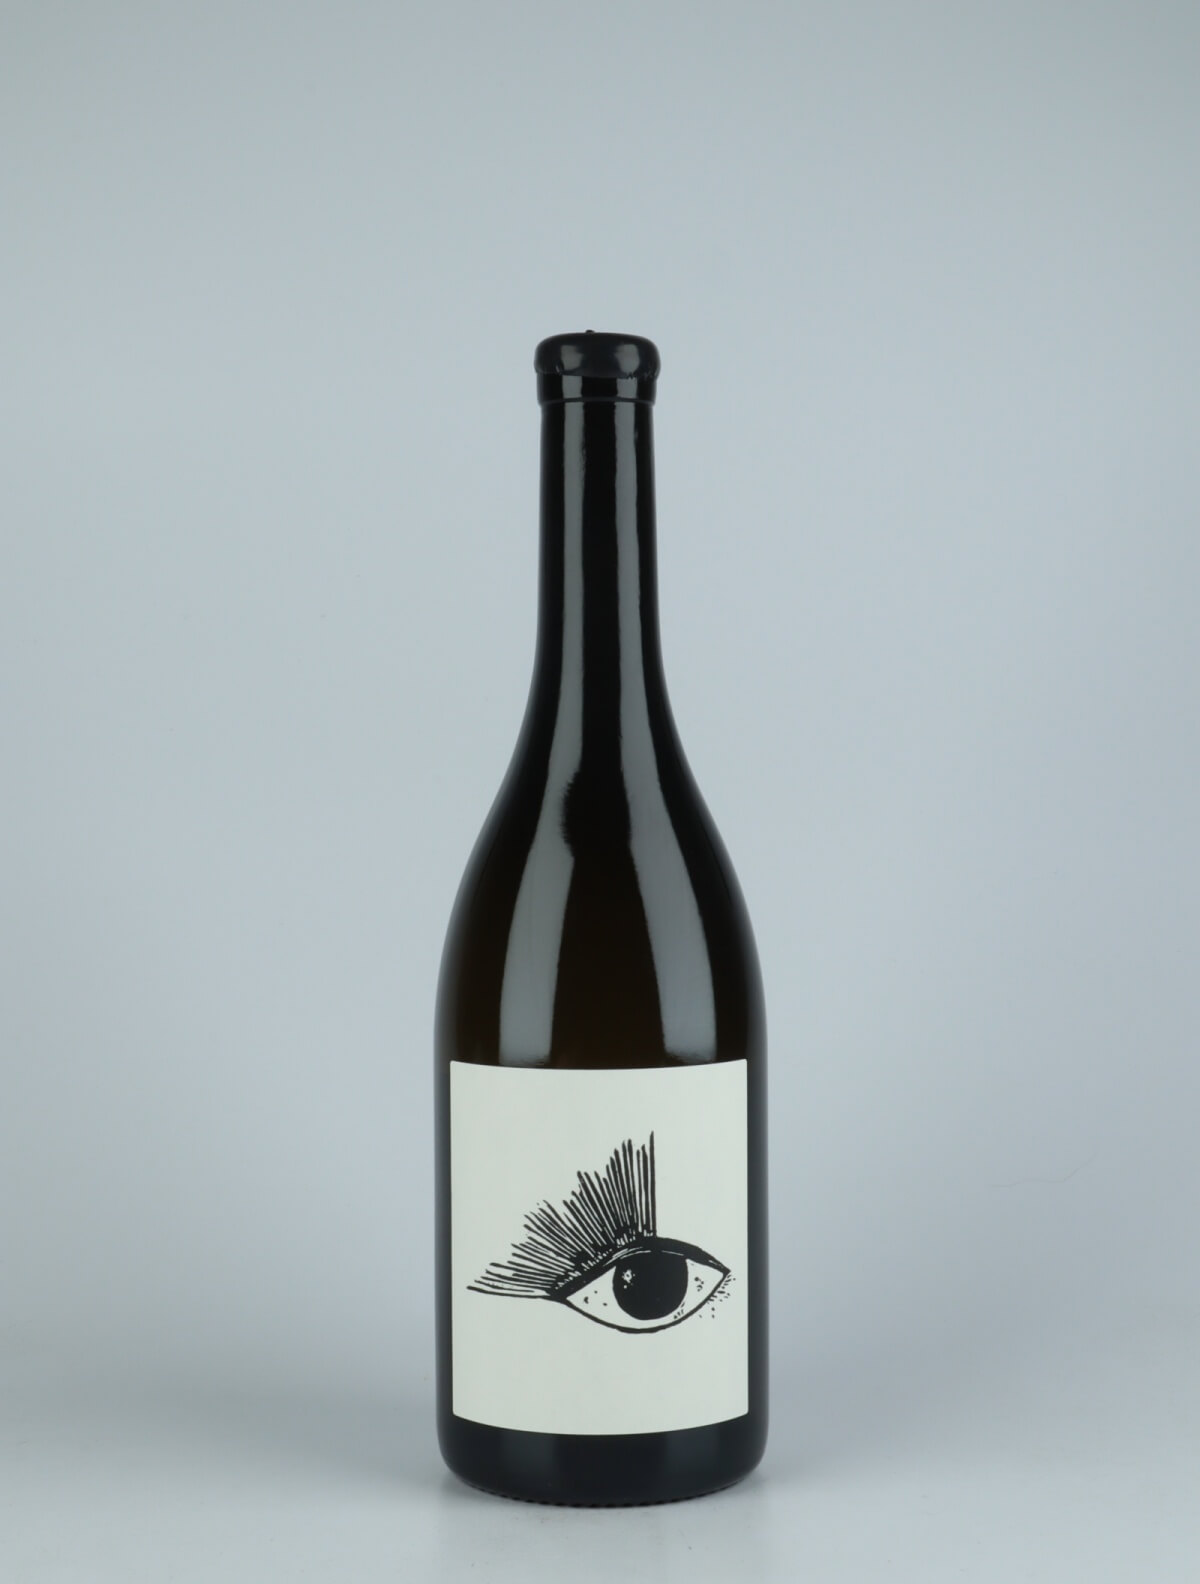 En flaske 2020 Bouzeron - Alibi #3 Hvidvin fra Vin Noé, Bourgogne i Frankrig